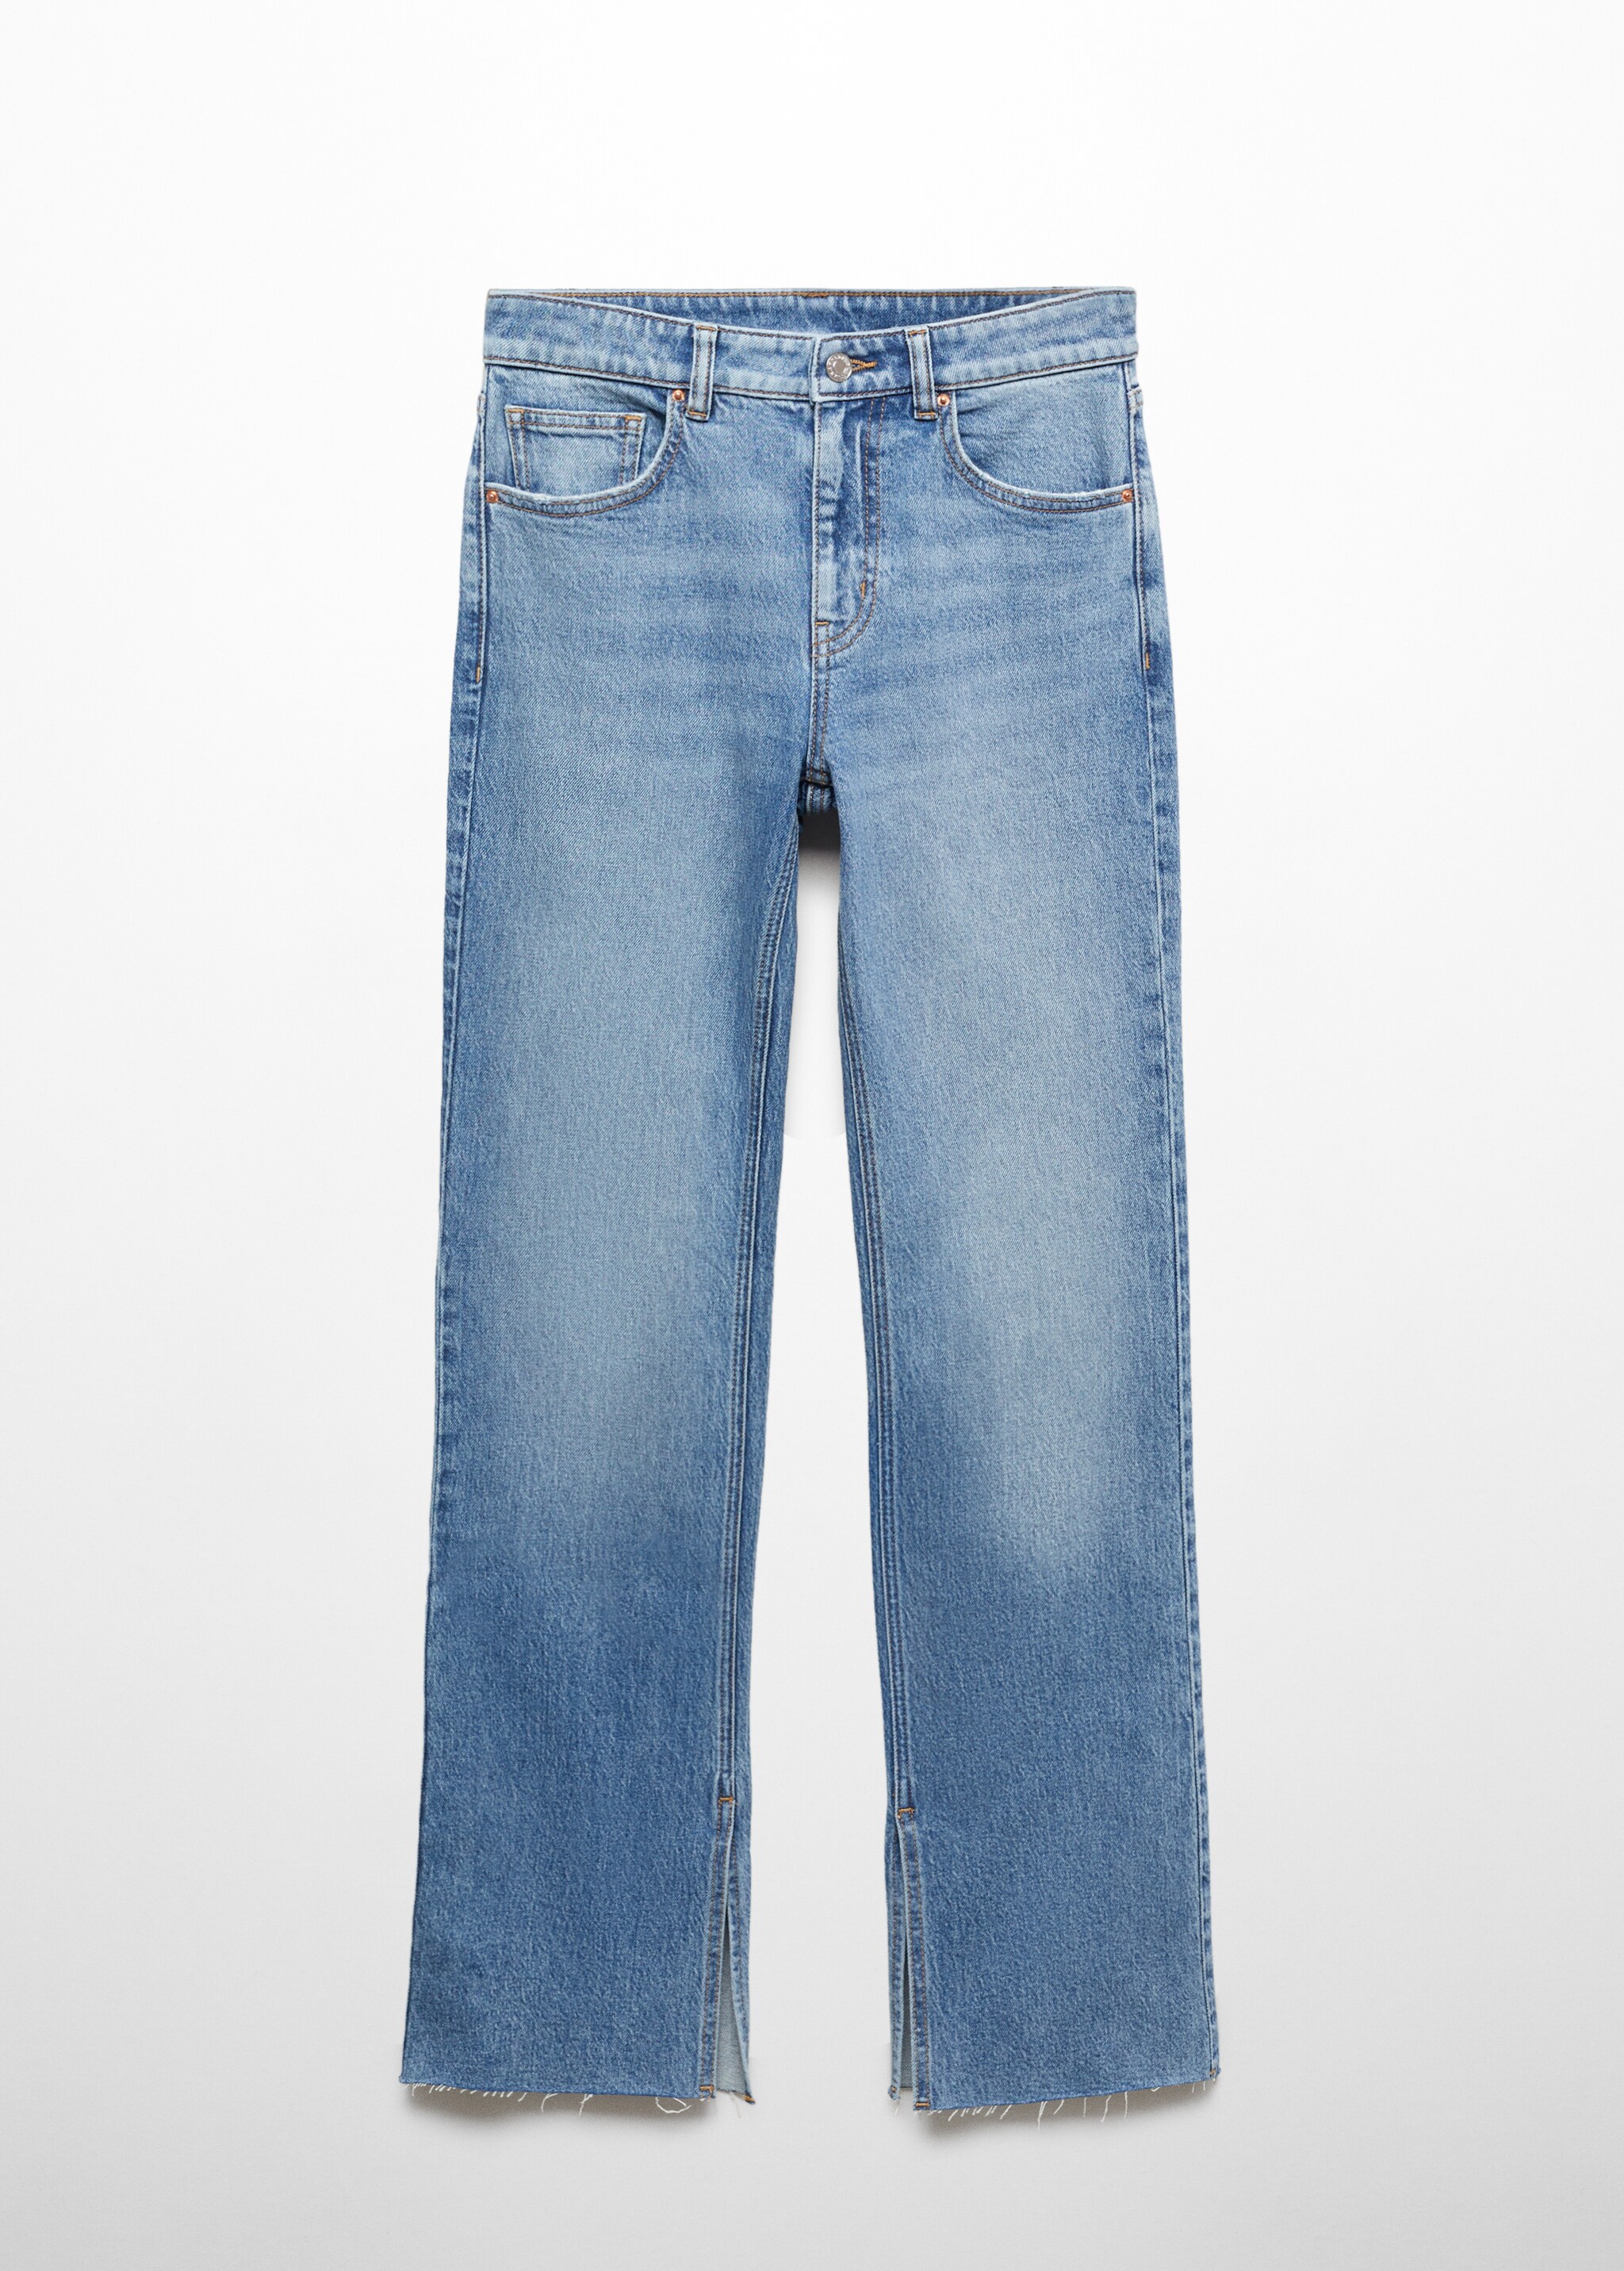 Прямые джинсы с посадкой на талии и разрезами - Изделие без модели